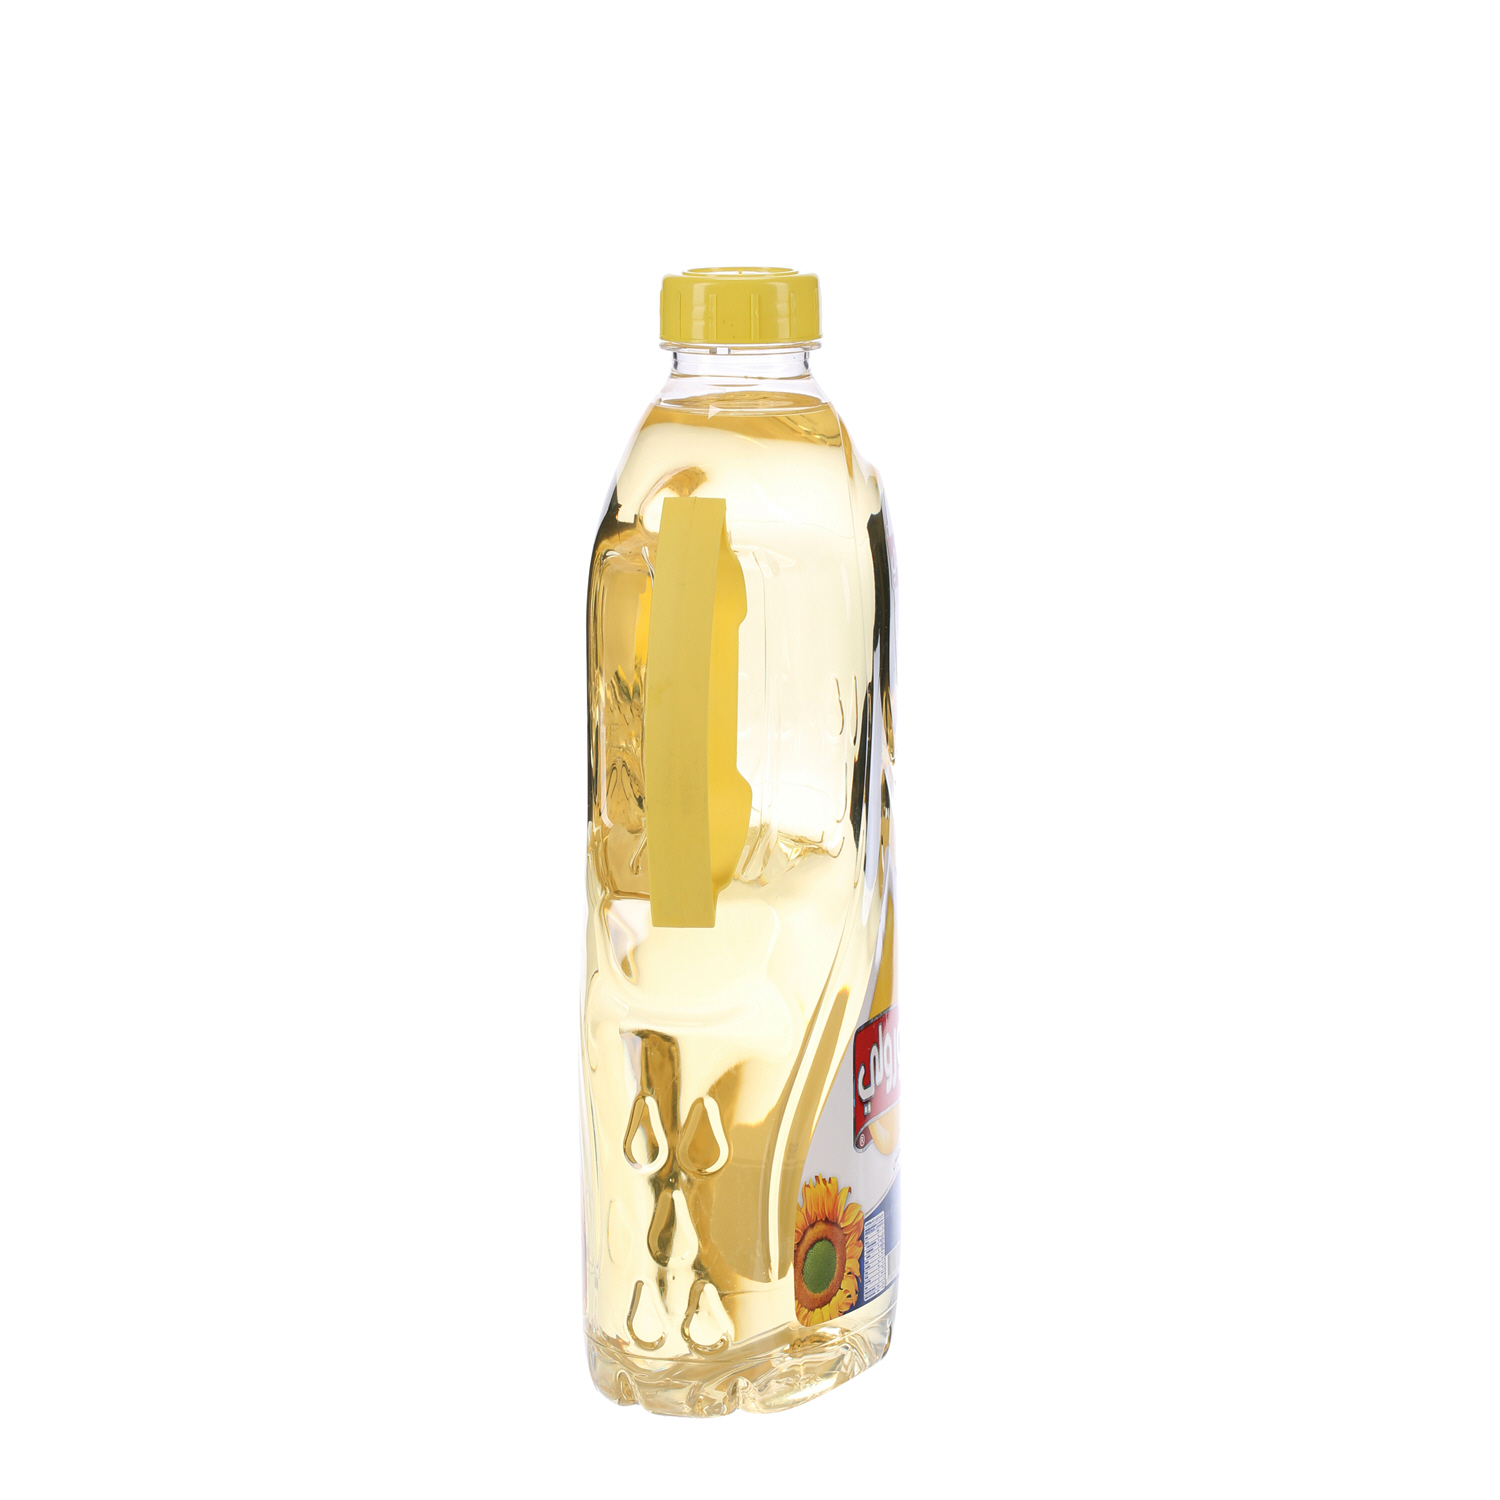 Coroli Sunflower Oil 1.8 L